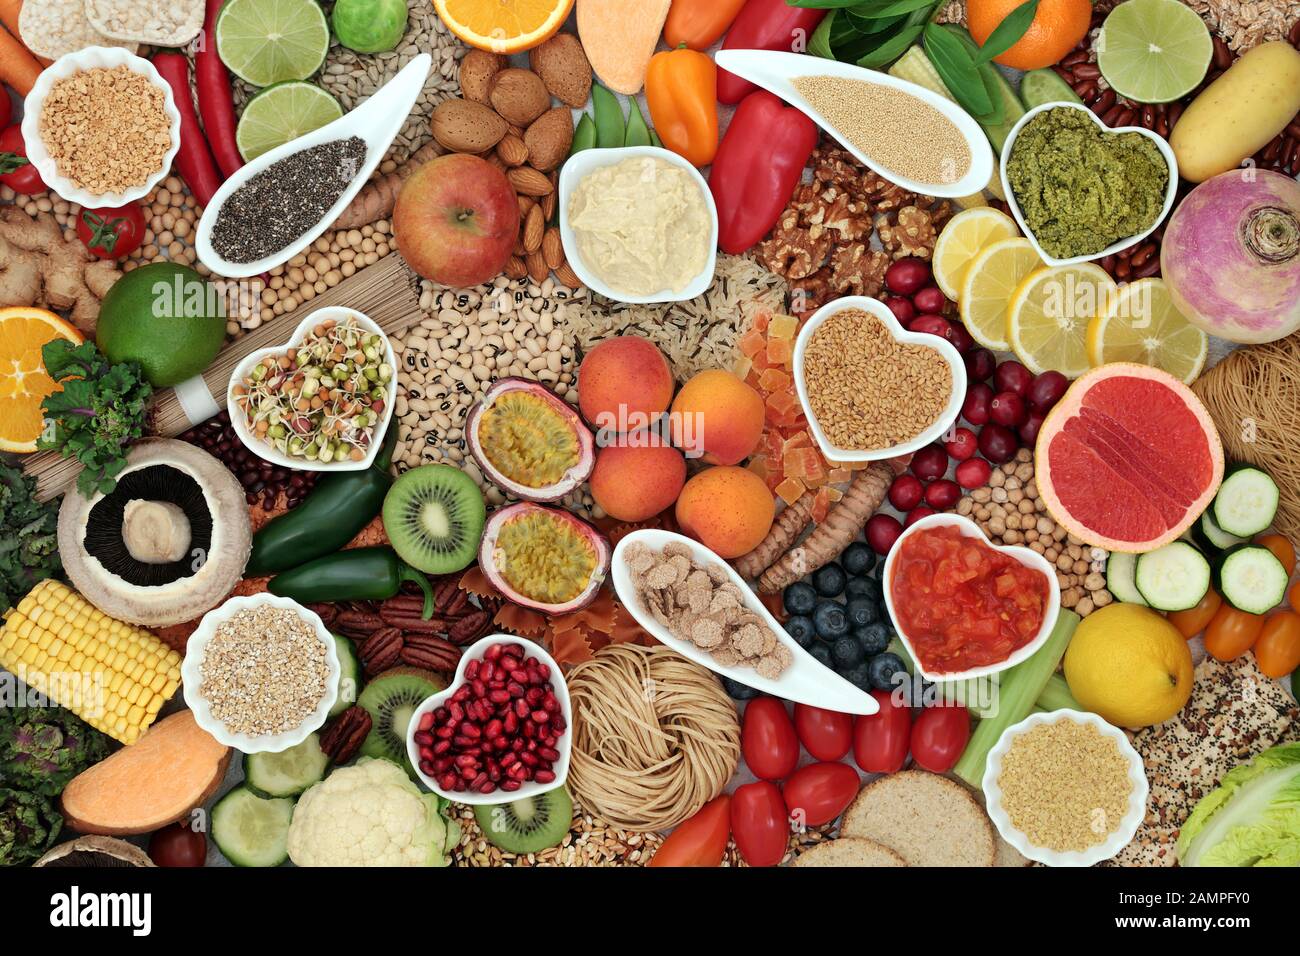 Régime alimentaire sain super vegan avec fruits, légumes, noix, épices, pâtes, sauces, d'épices et de céréales. Riche en protéines, vitamines, antioxydants et fibres. Banque D'Images